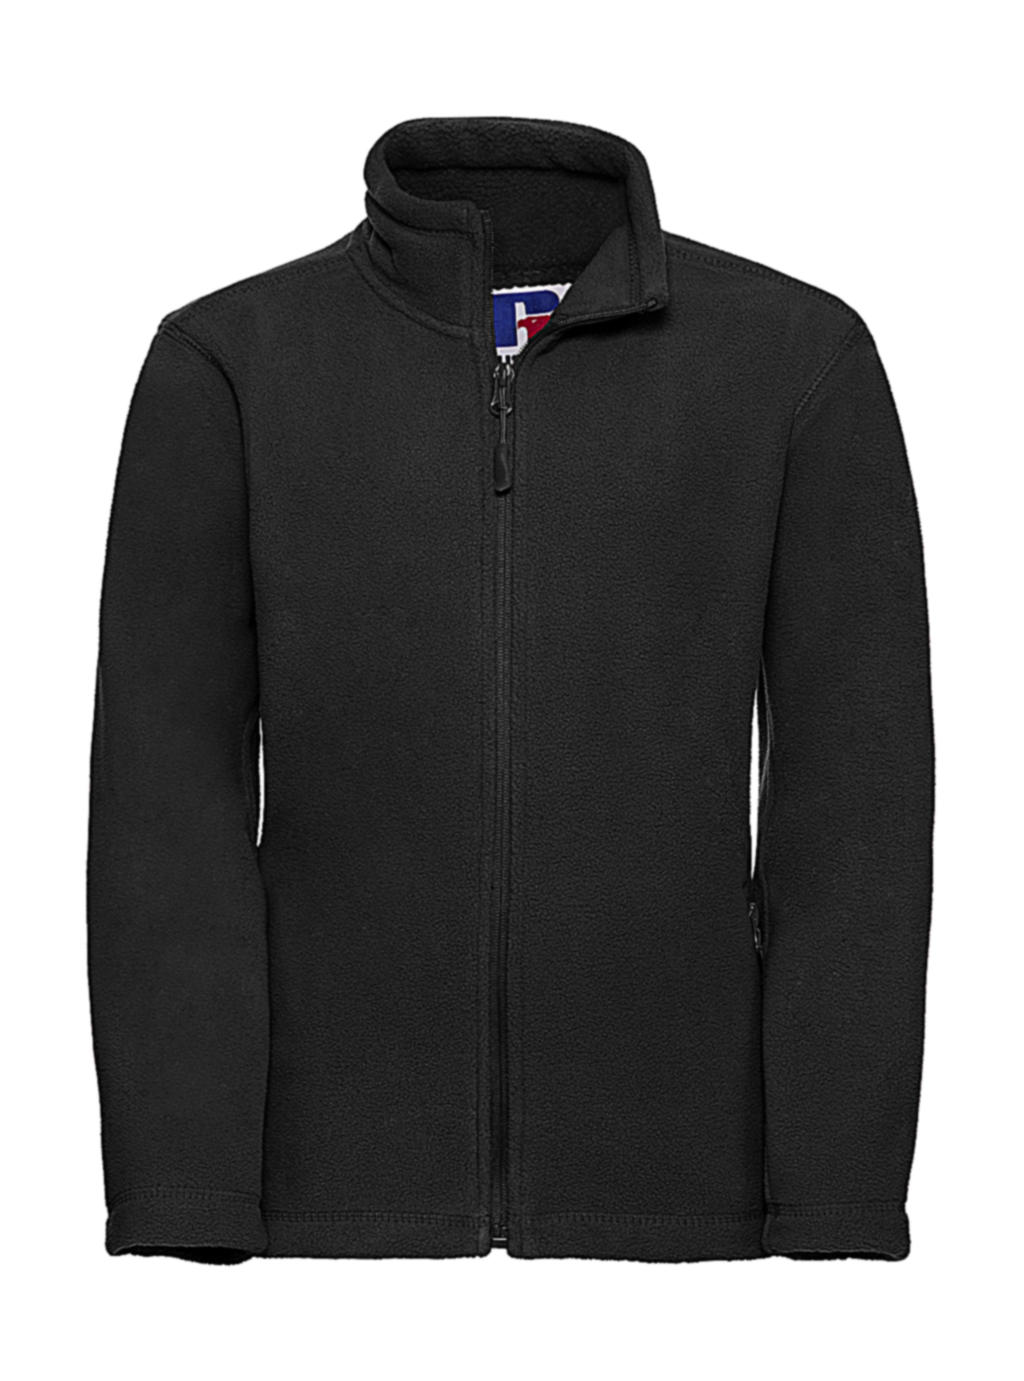  Kids Full Zip Outdoor Fleece in Farbe Black